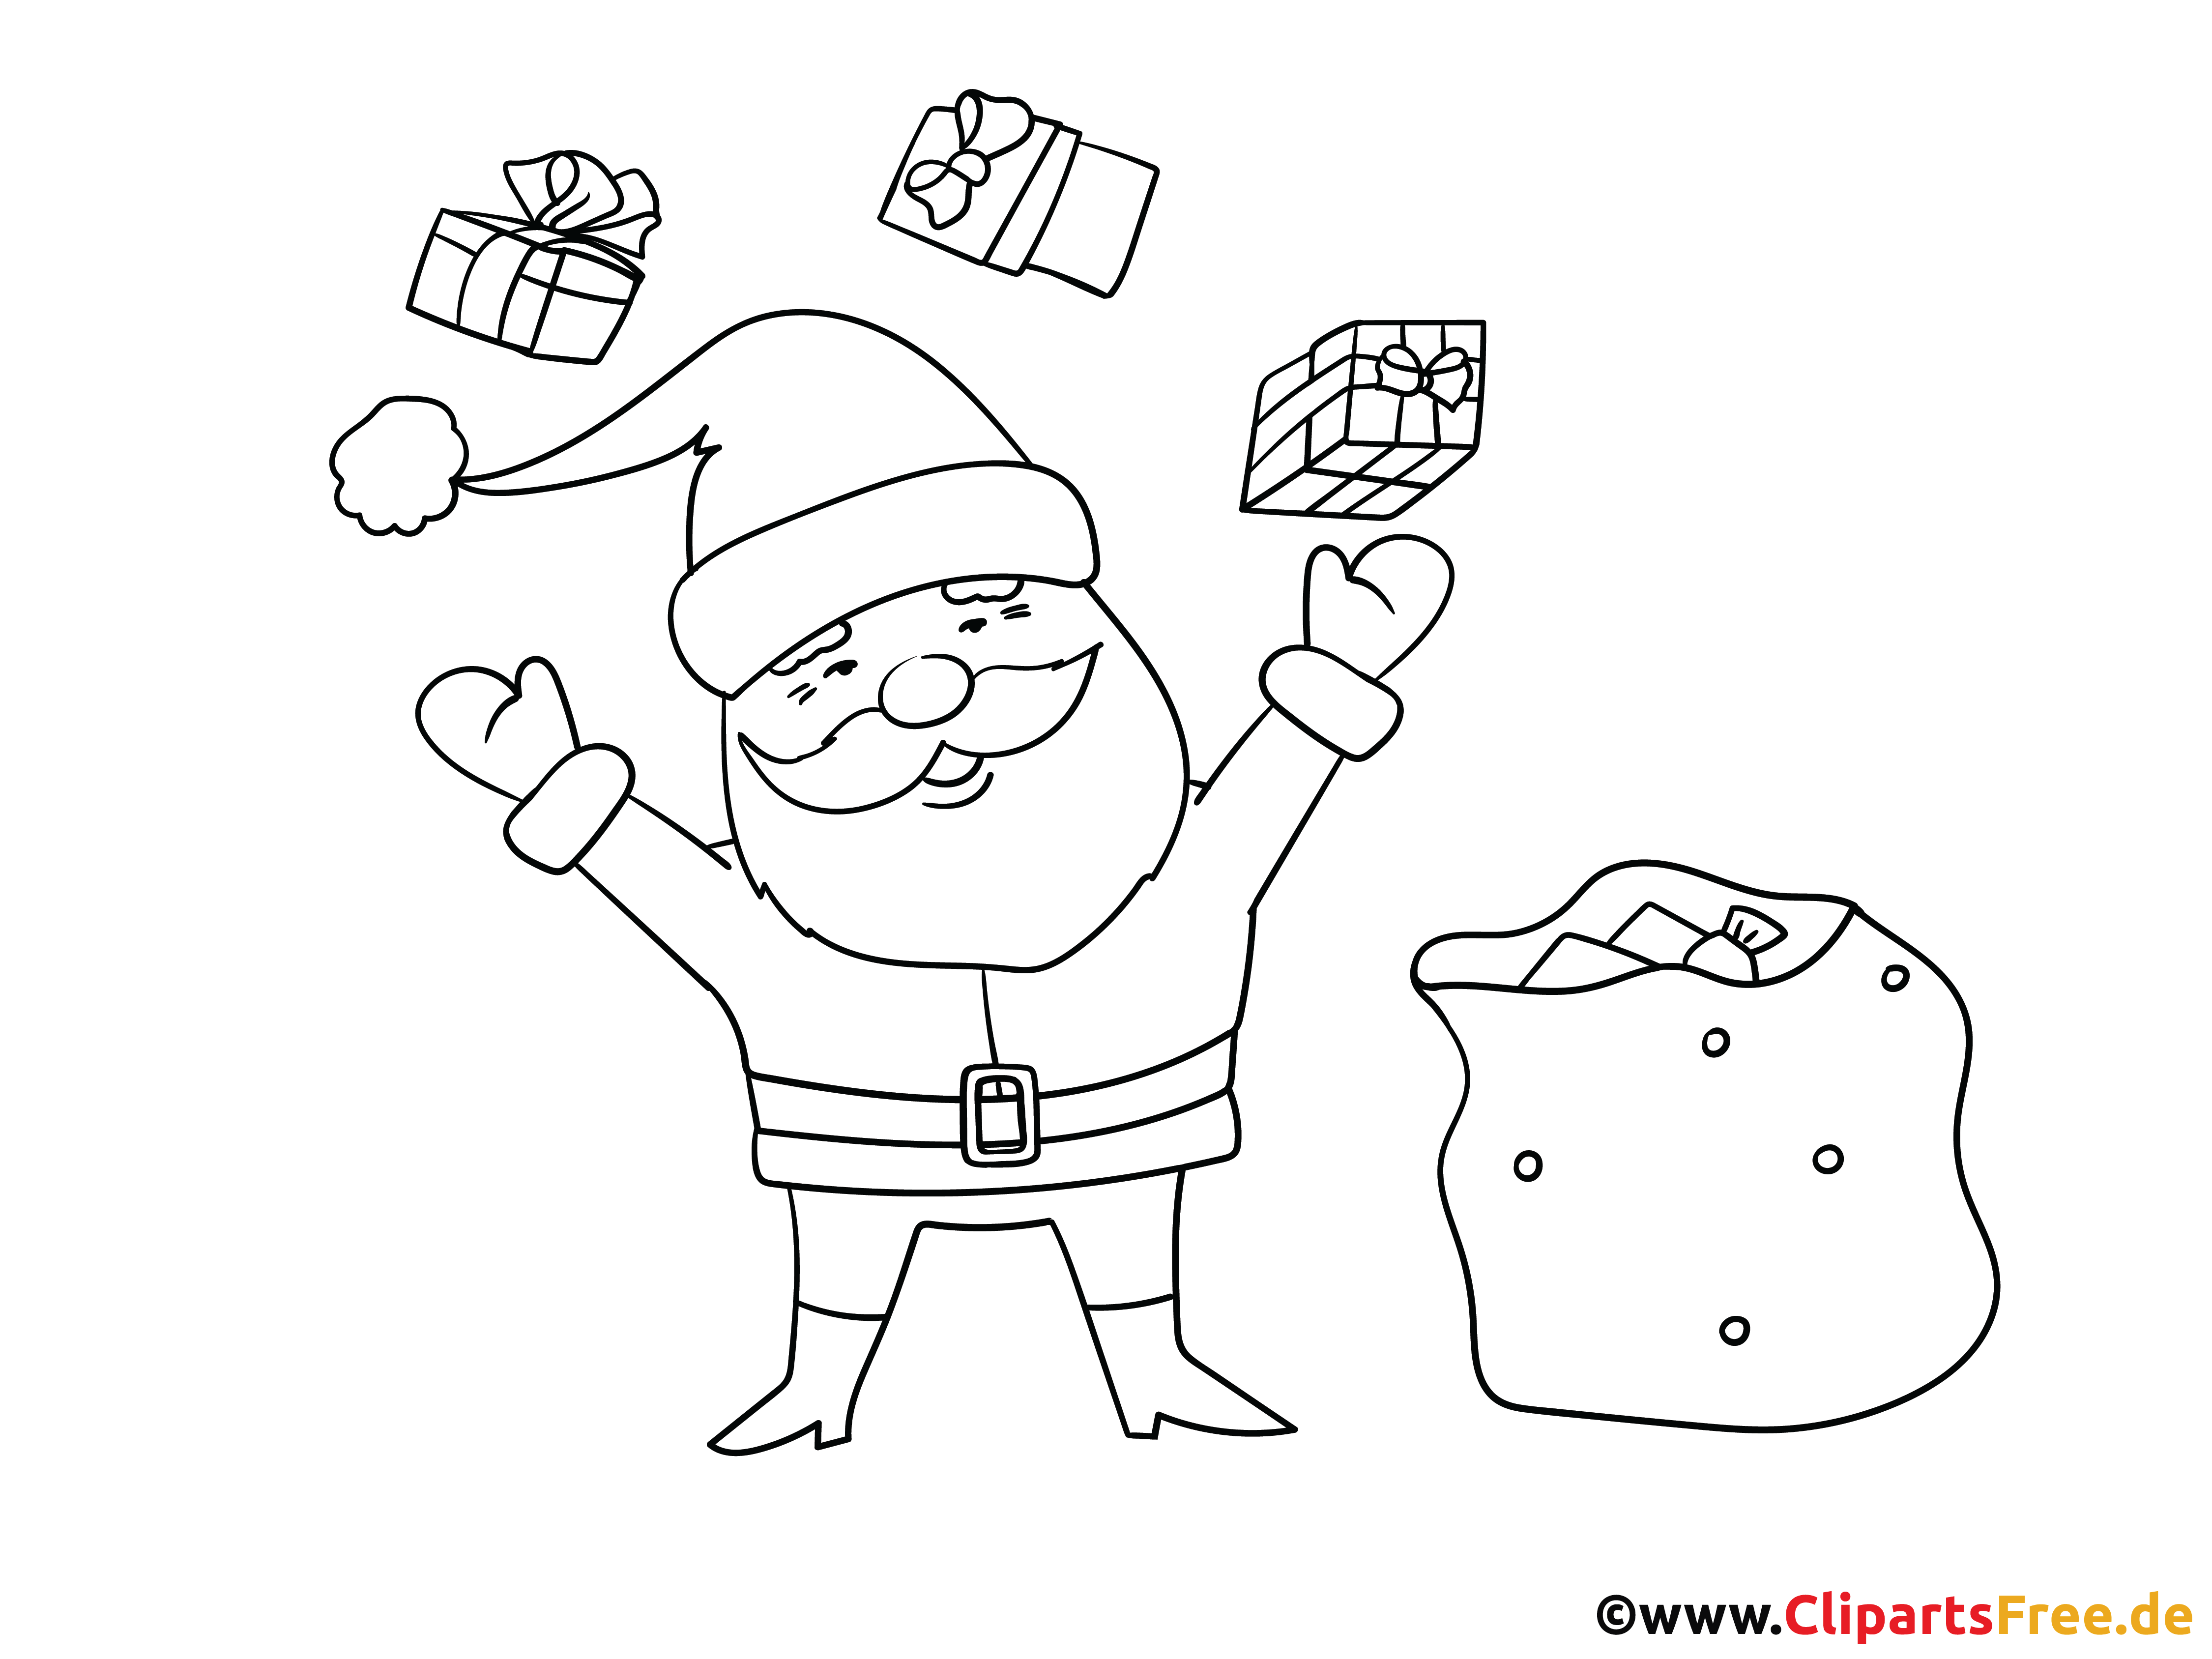 Ausmalbild Weihnachtsmann mit Geschenkensack